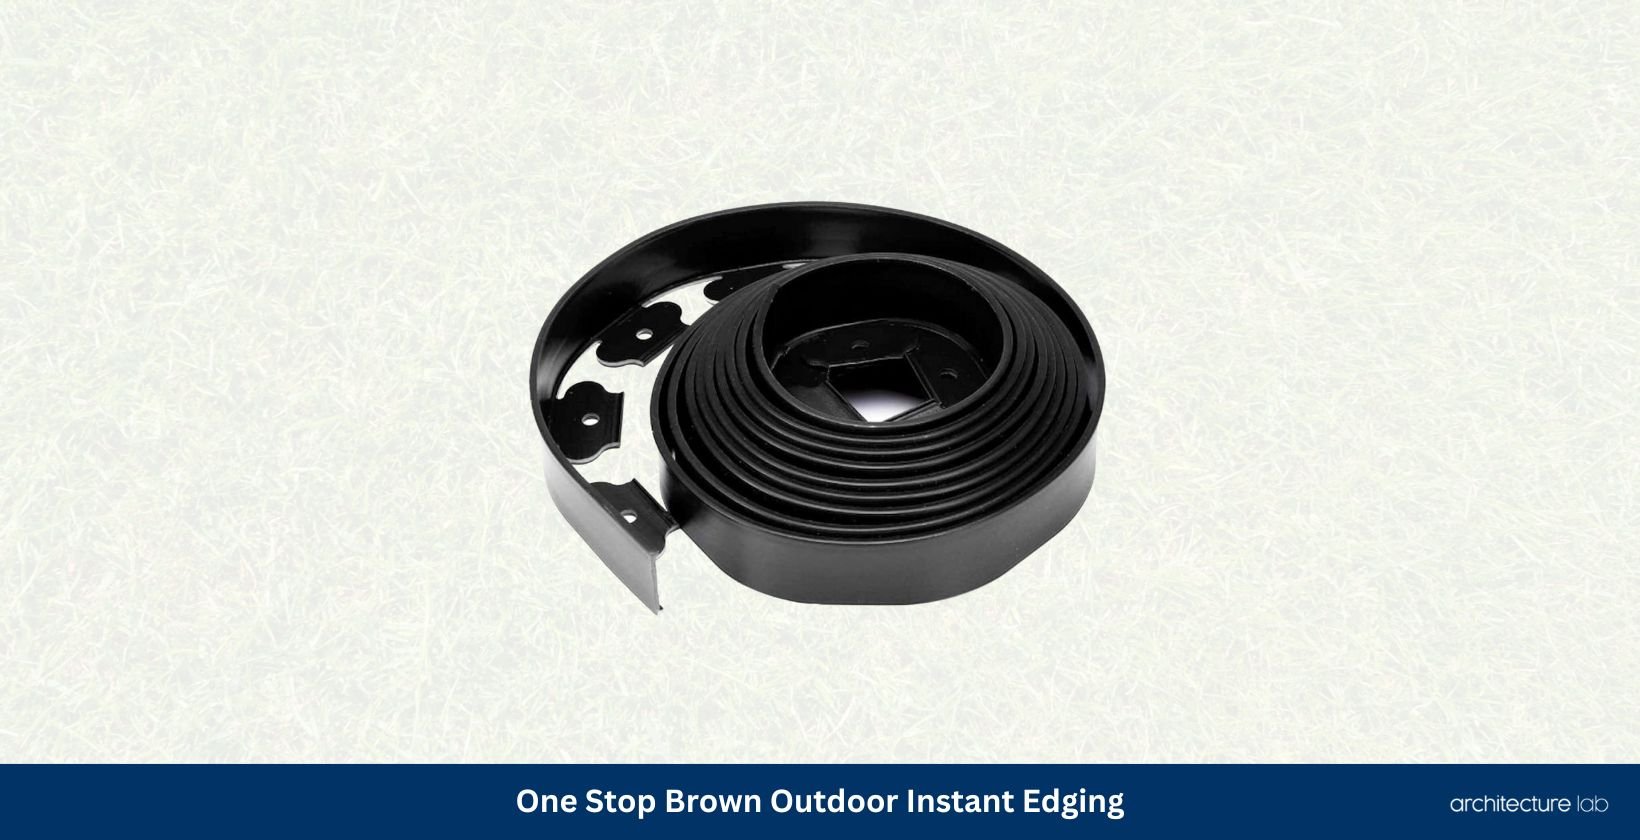 One stop brown outdoor instant edging